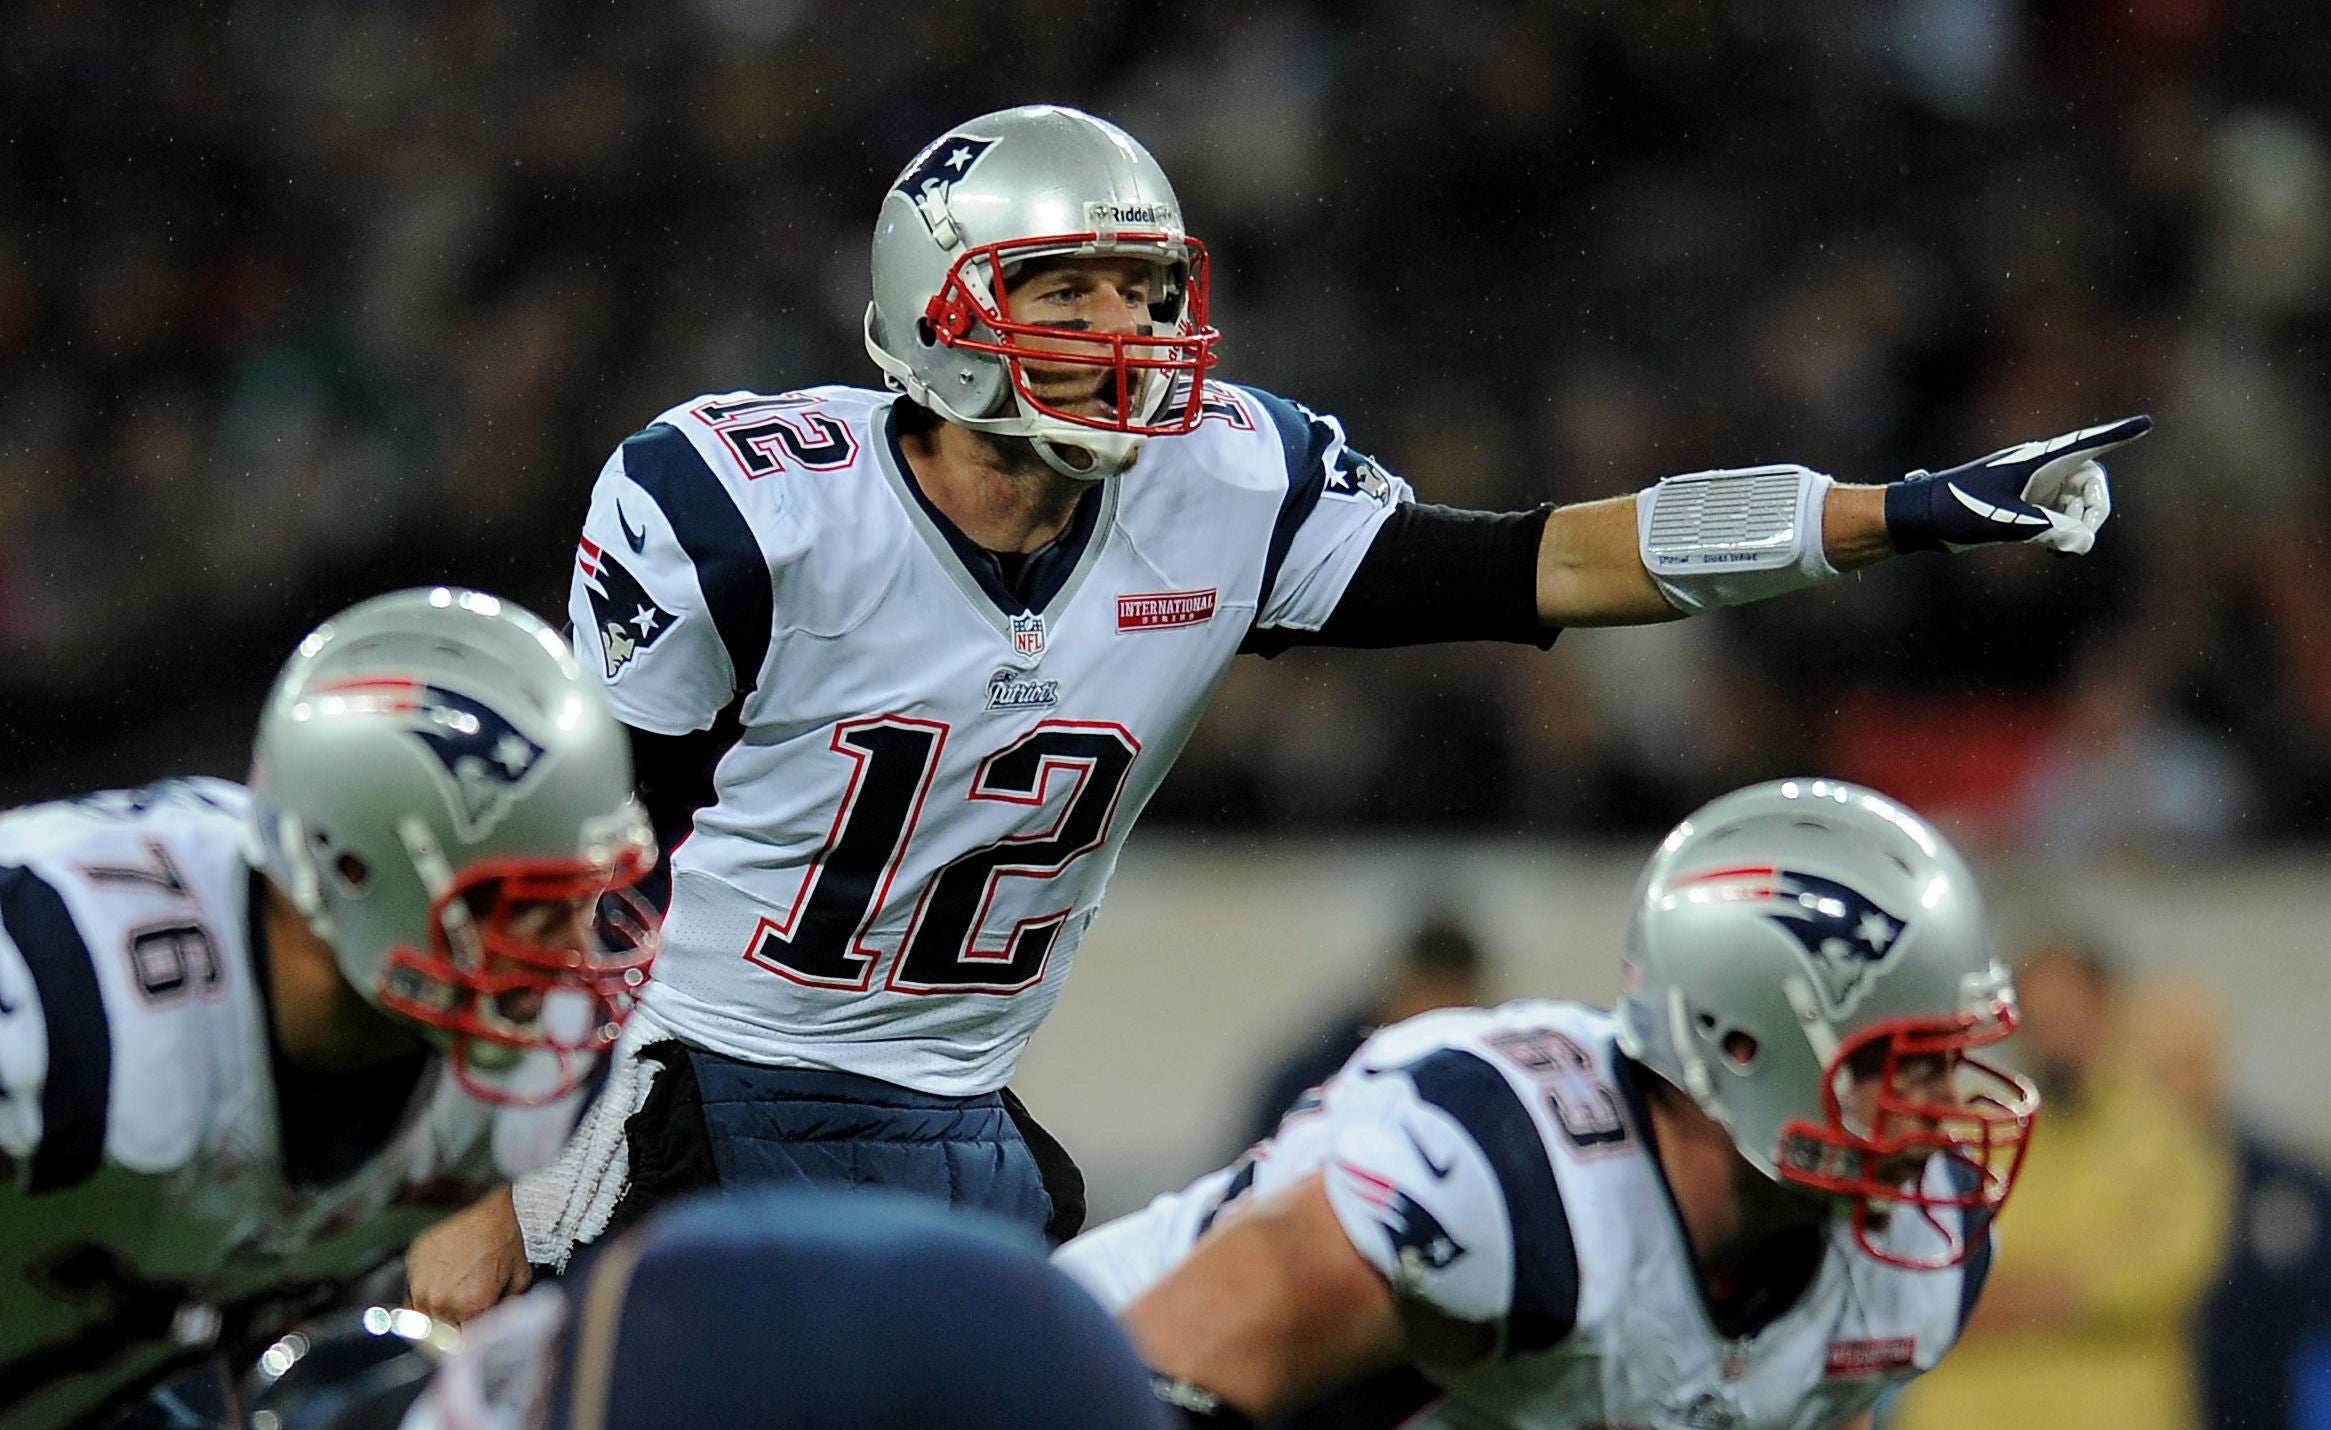 Tom Brady encabezó a los New England Patriots hasta su salida en 2019